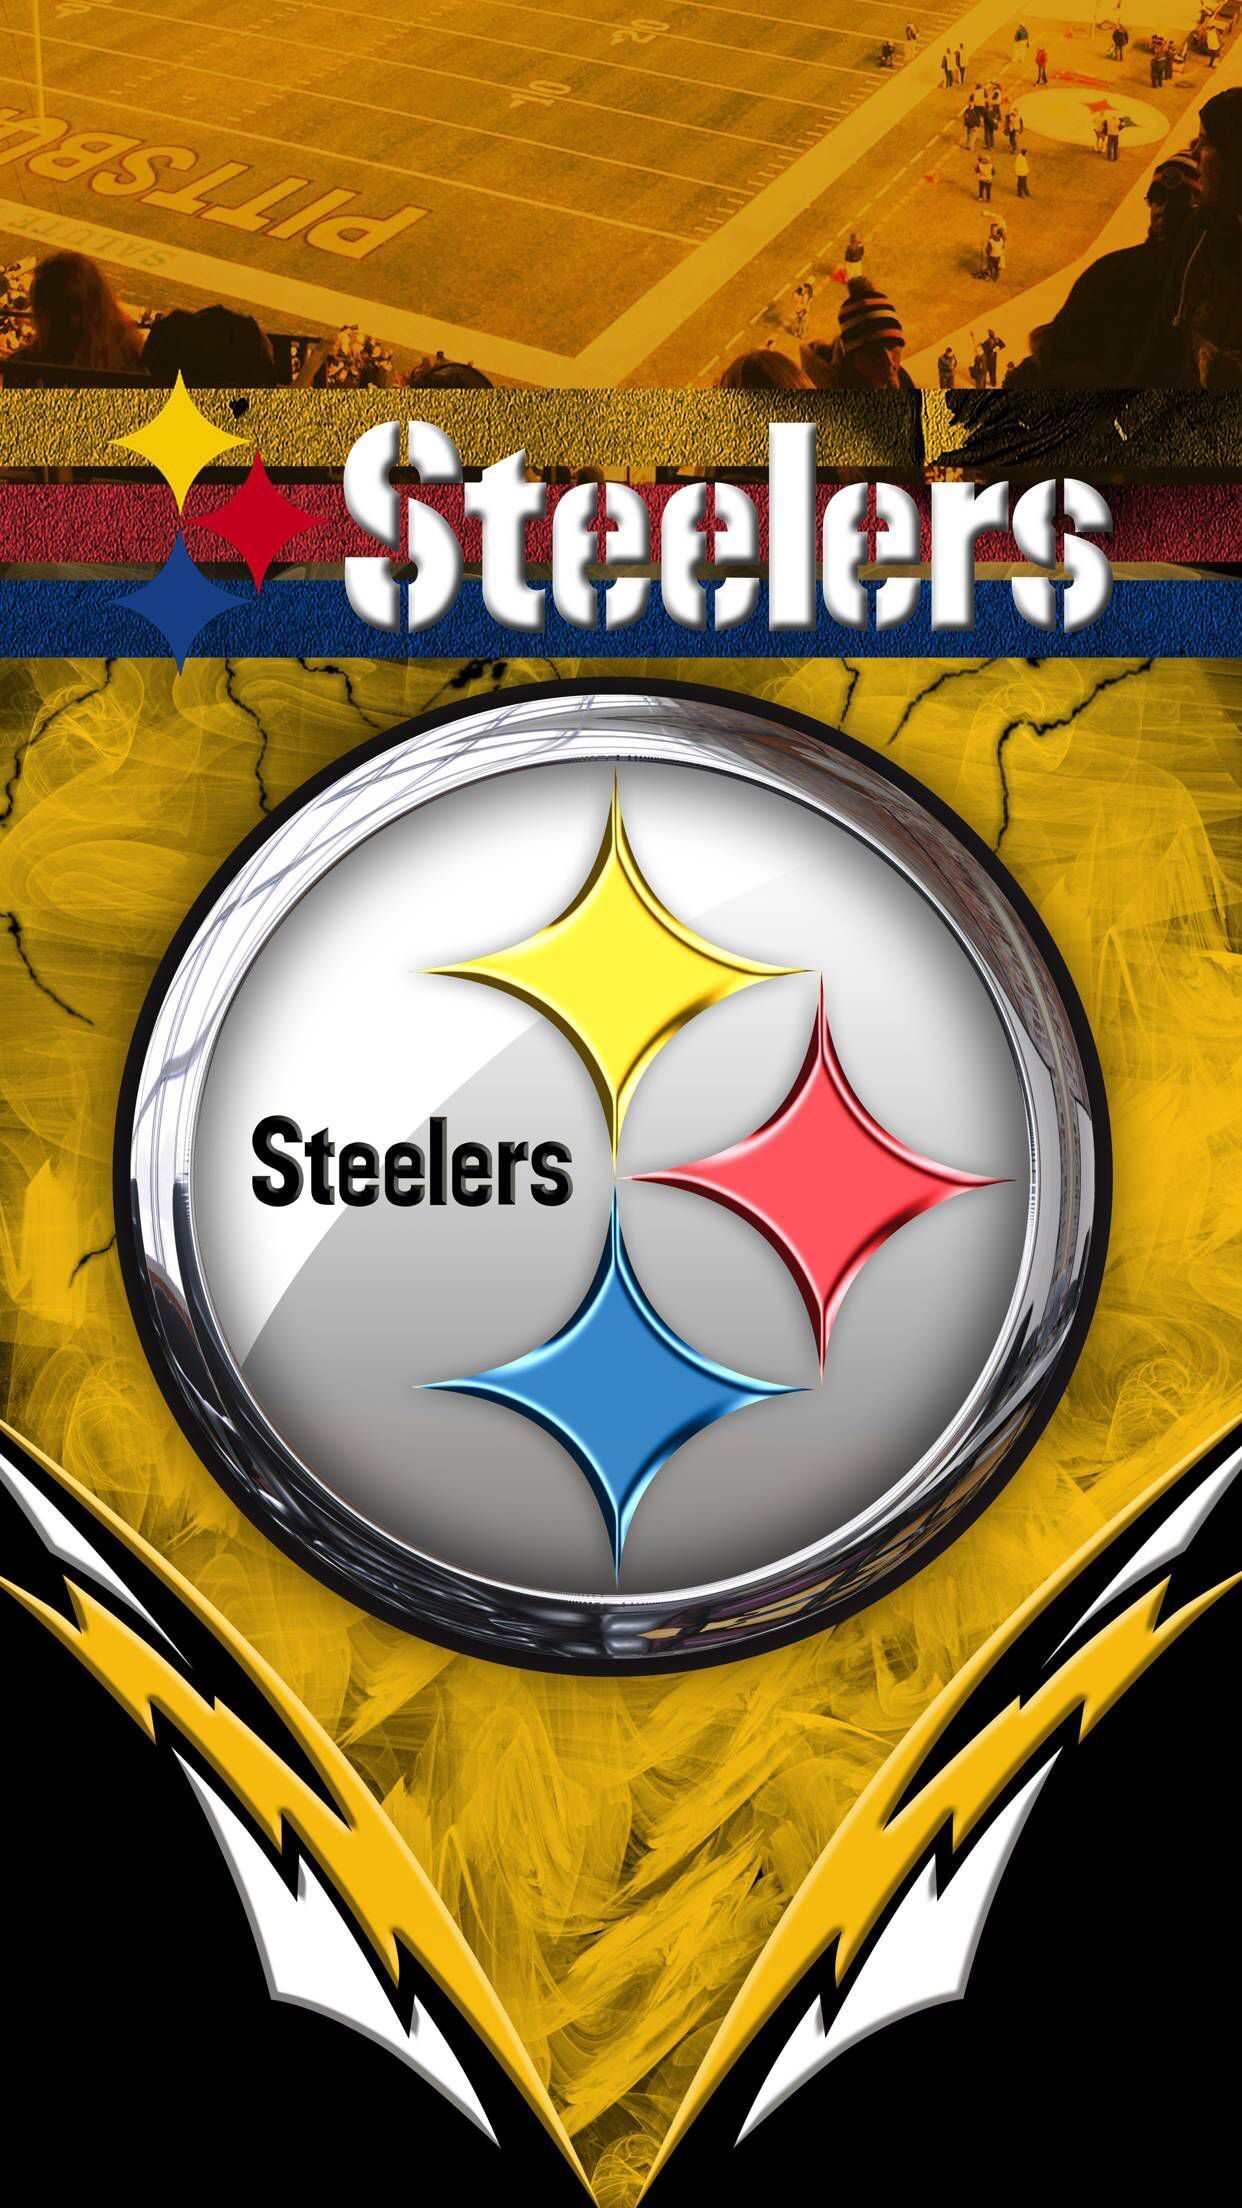 PITTSBURGH STEELERS PHONE DESKTOP WALLPAPER BACKGROUNDS IN 2019. Pittsburgh steelers wallpaper, Pittsburgh steelers logo, Pittsburgh steelers football